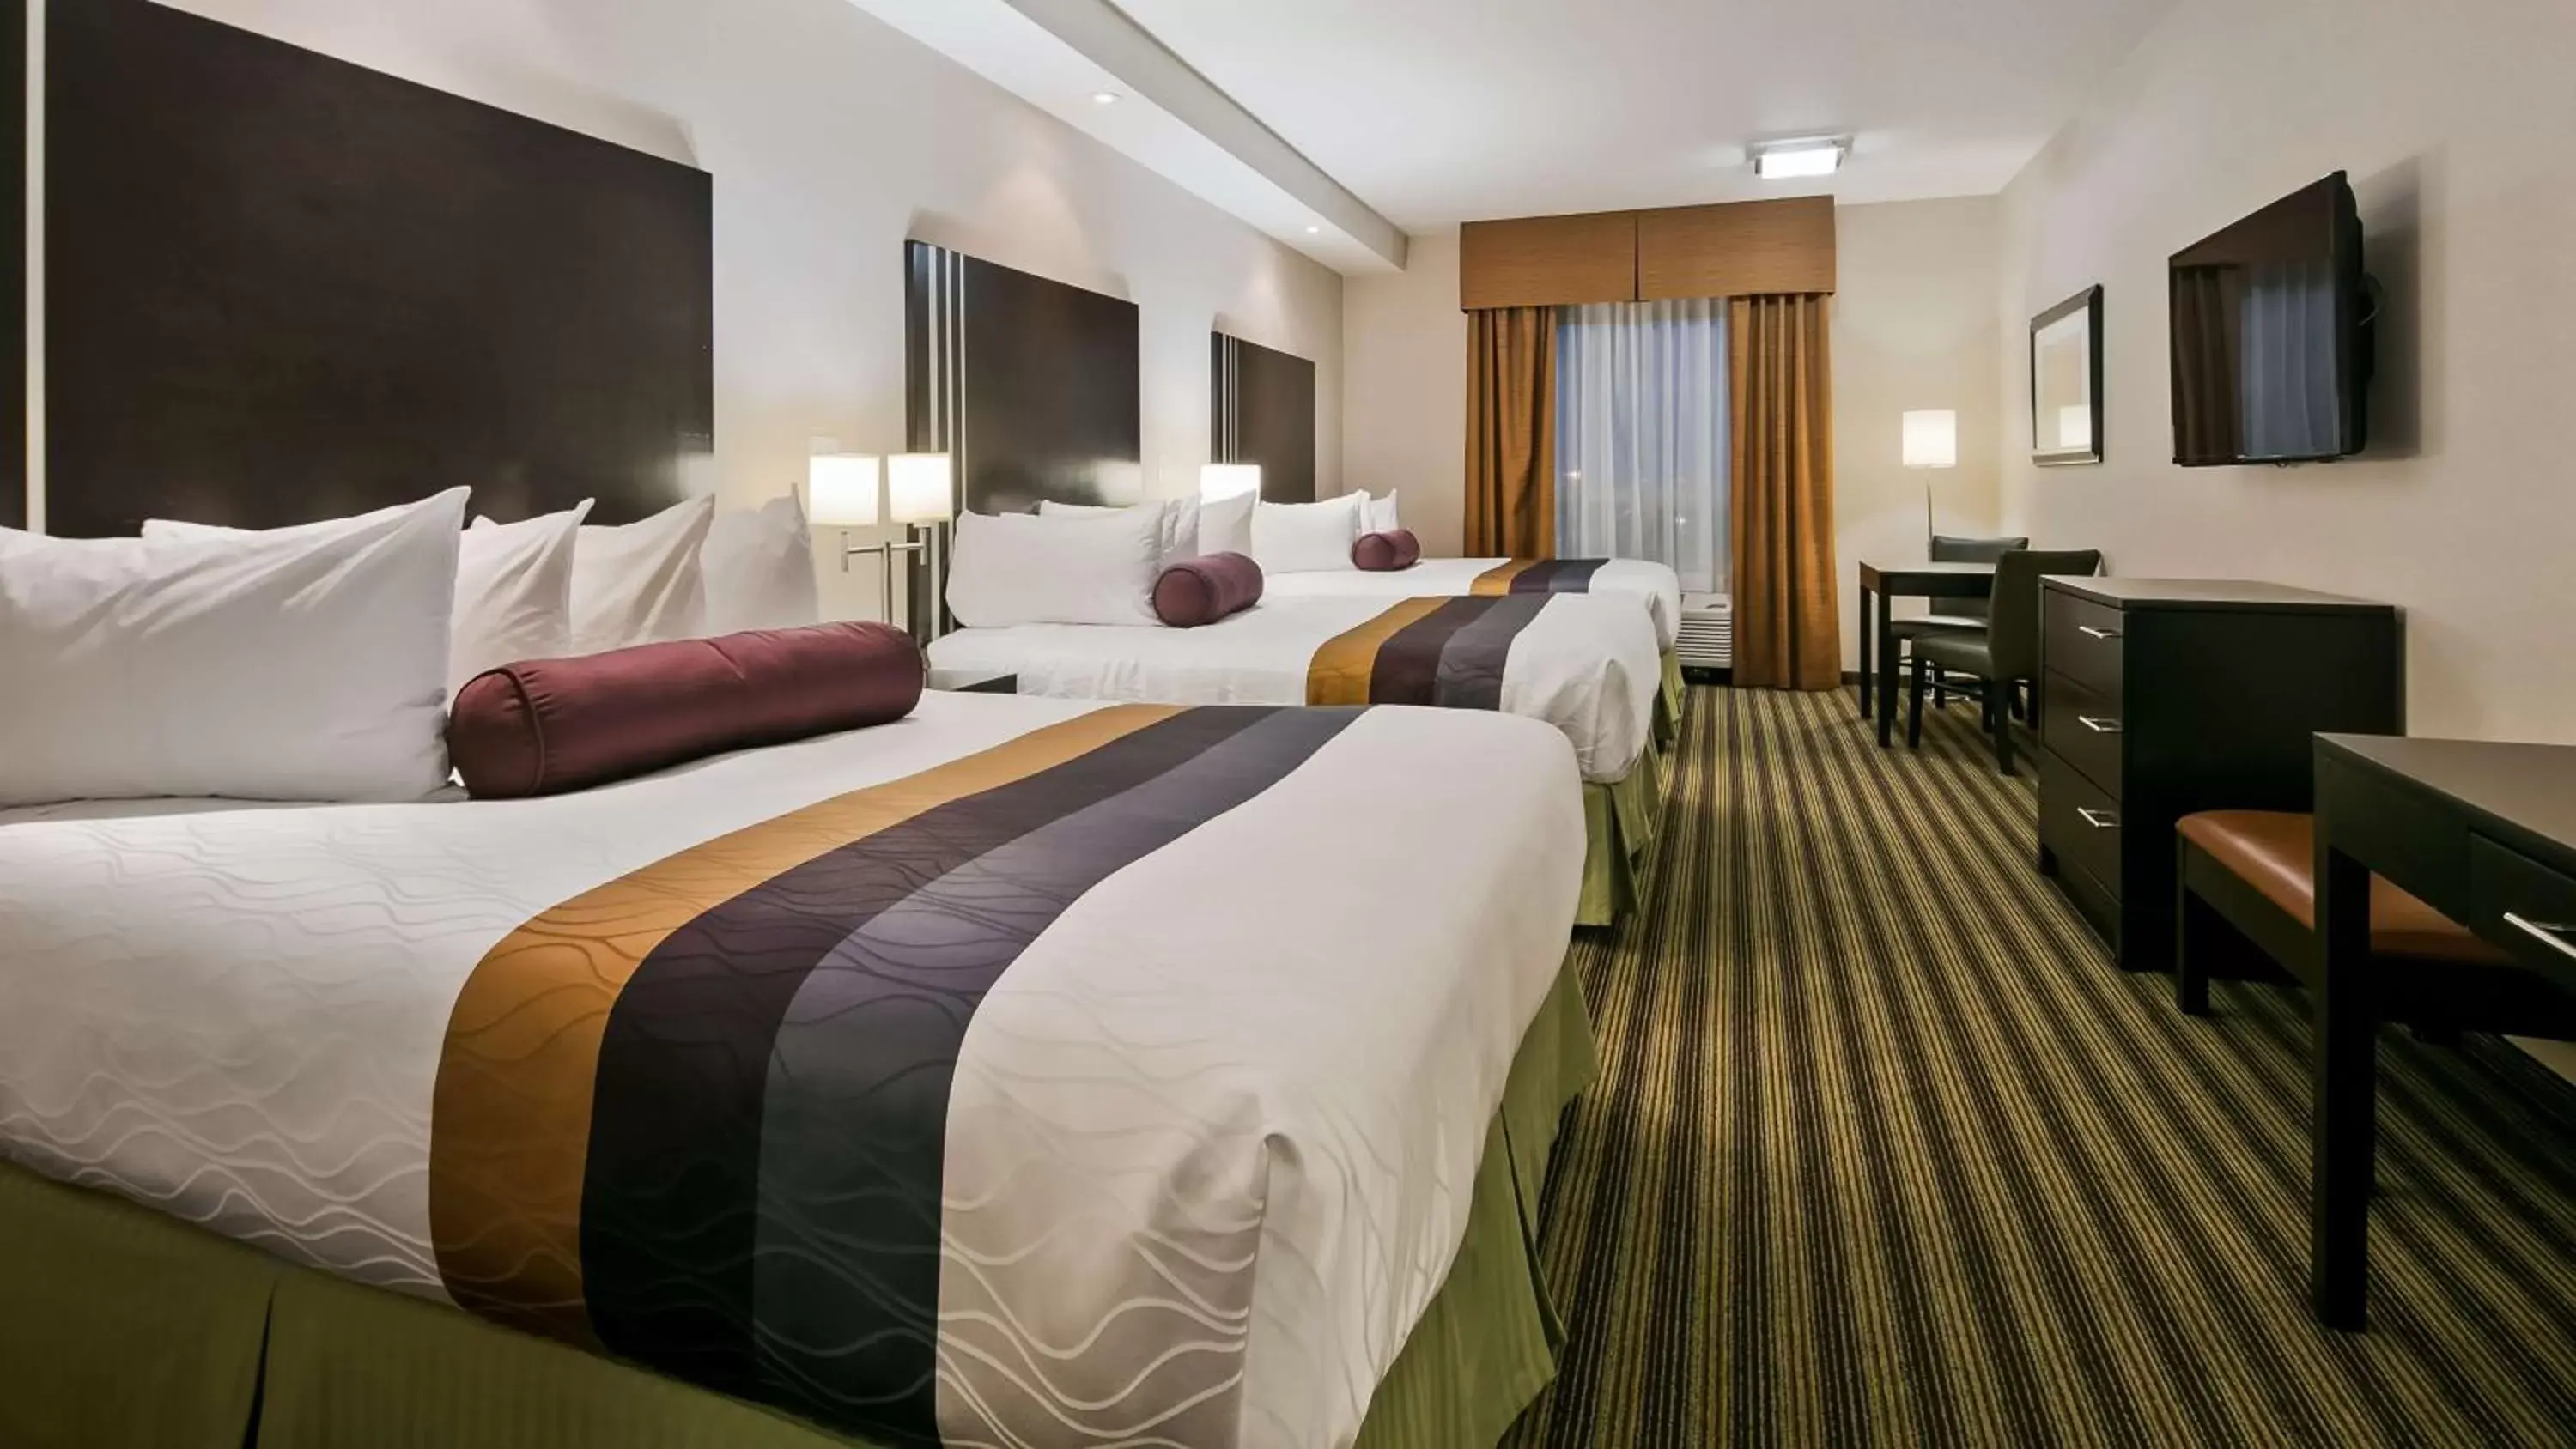 Bedroom, Bed in Best Western Plus Sherwood Park Inn & Suites